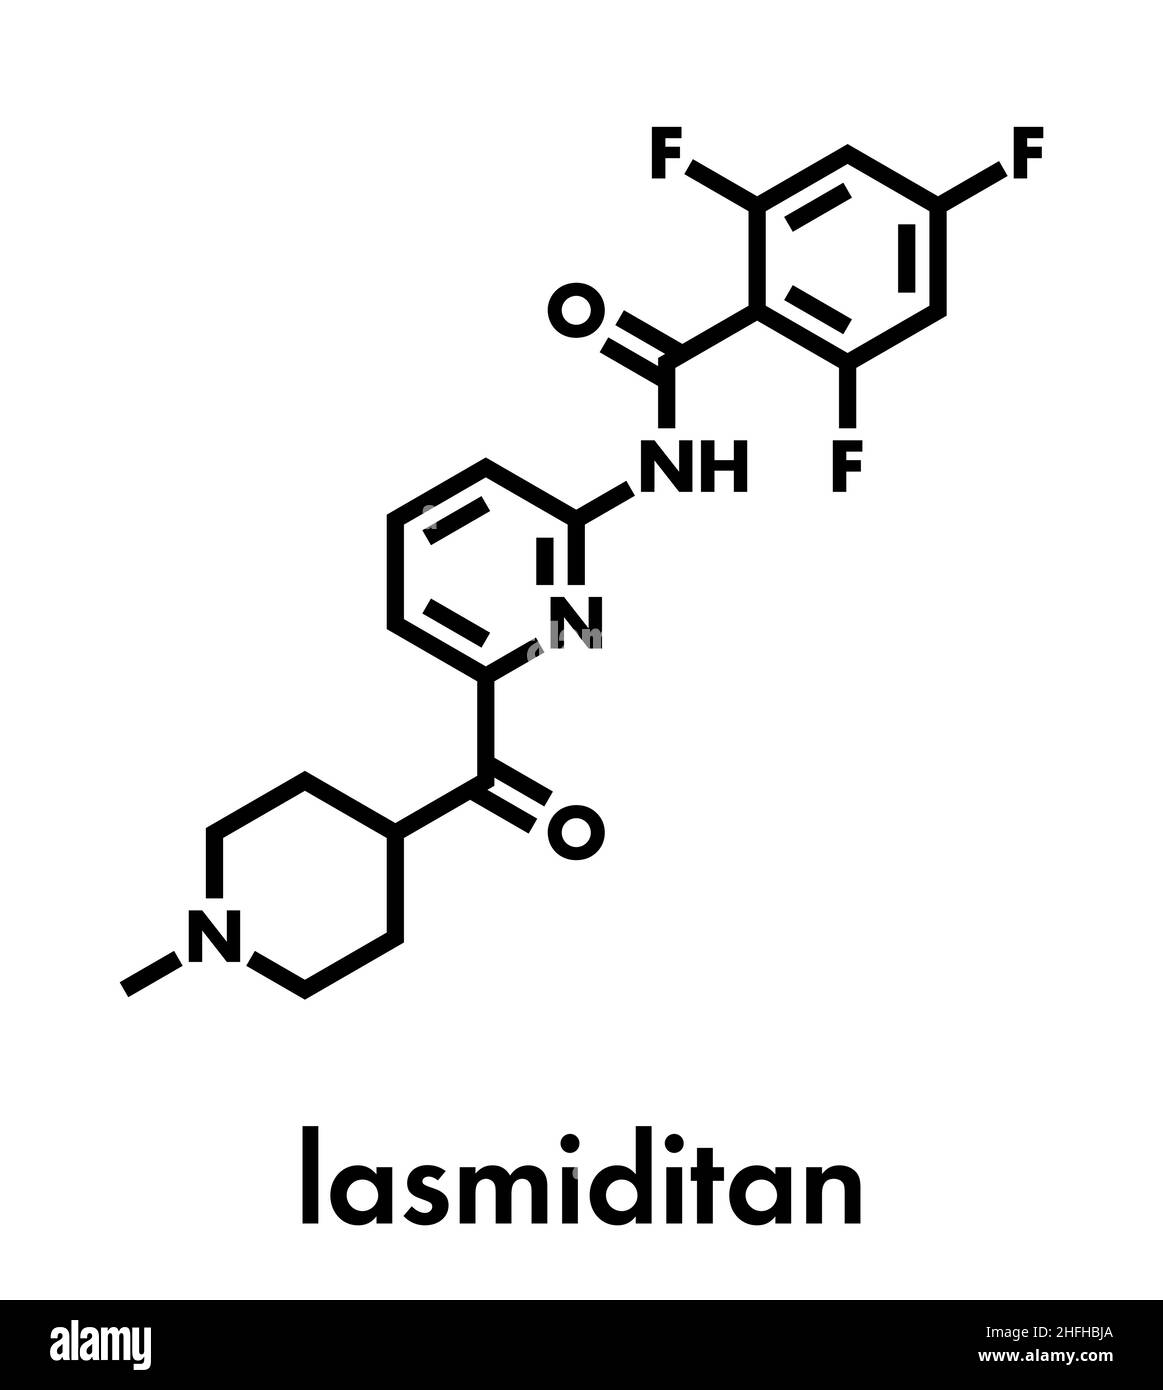 Lasmiditan migraine drug molecule. Skeletal formula. Stock Vector